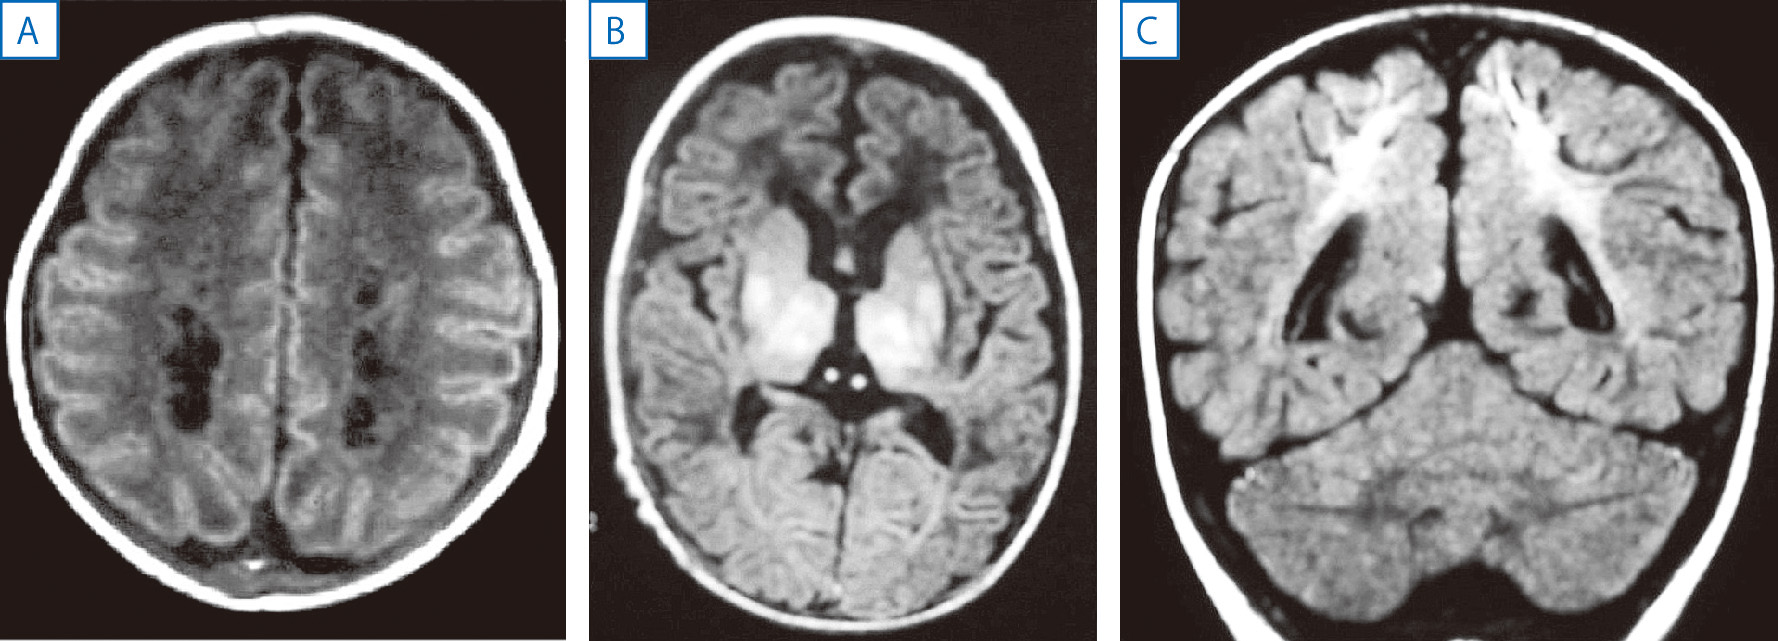 ⓔ図18-13-10　周産期脳障害 A：脳室周囲白質軟化症 (両側性の脳室周囲白質内の嚢胞)，頭部MRI，T1強調画像，水平断，B：基底核視床壊死，頭部MRI，FLAIR水平断 (埼玉県立小児医療センター小熊栄二先生提供)，C：傍矢状脳障害，頭部MRI，FLAIR冠状断．